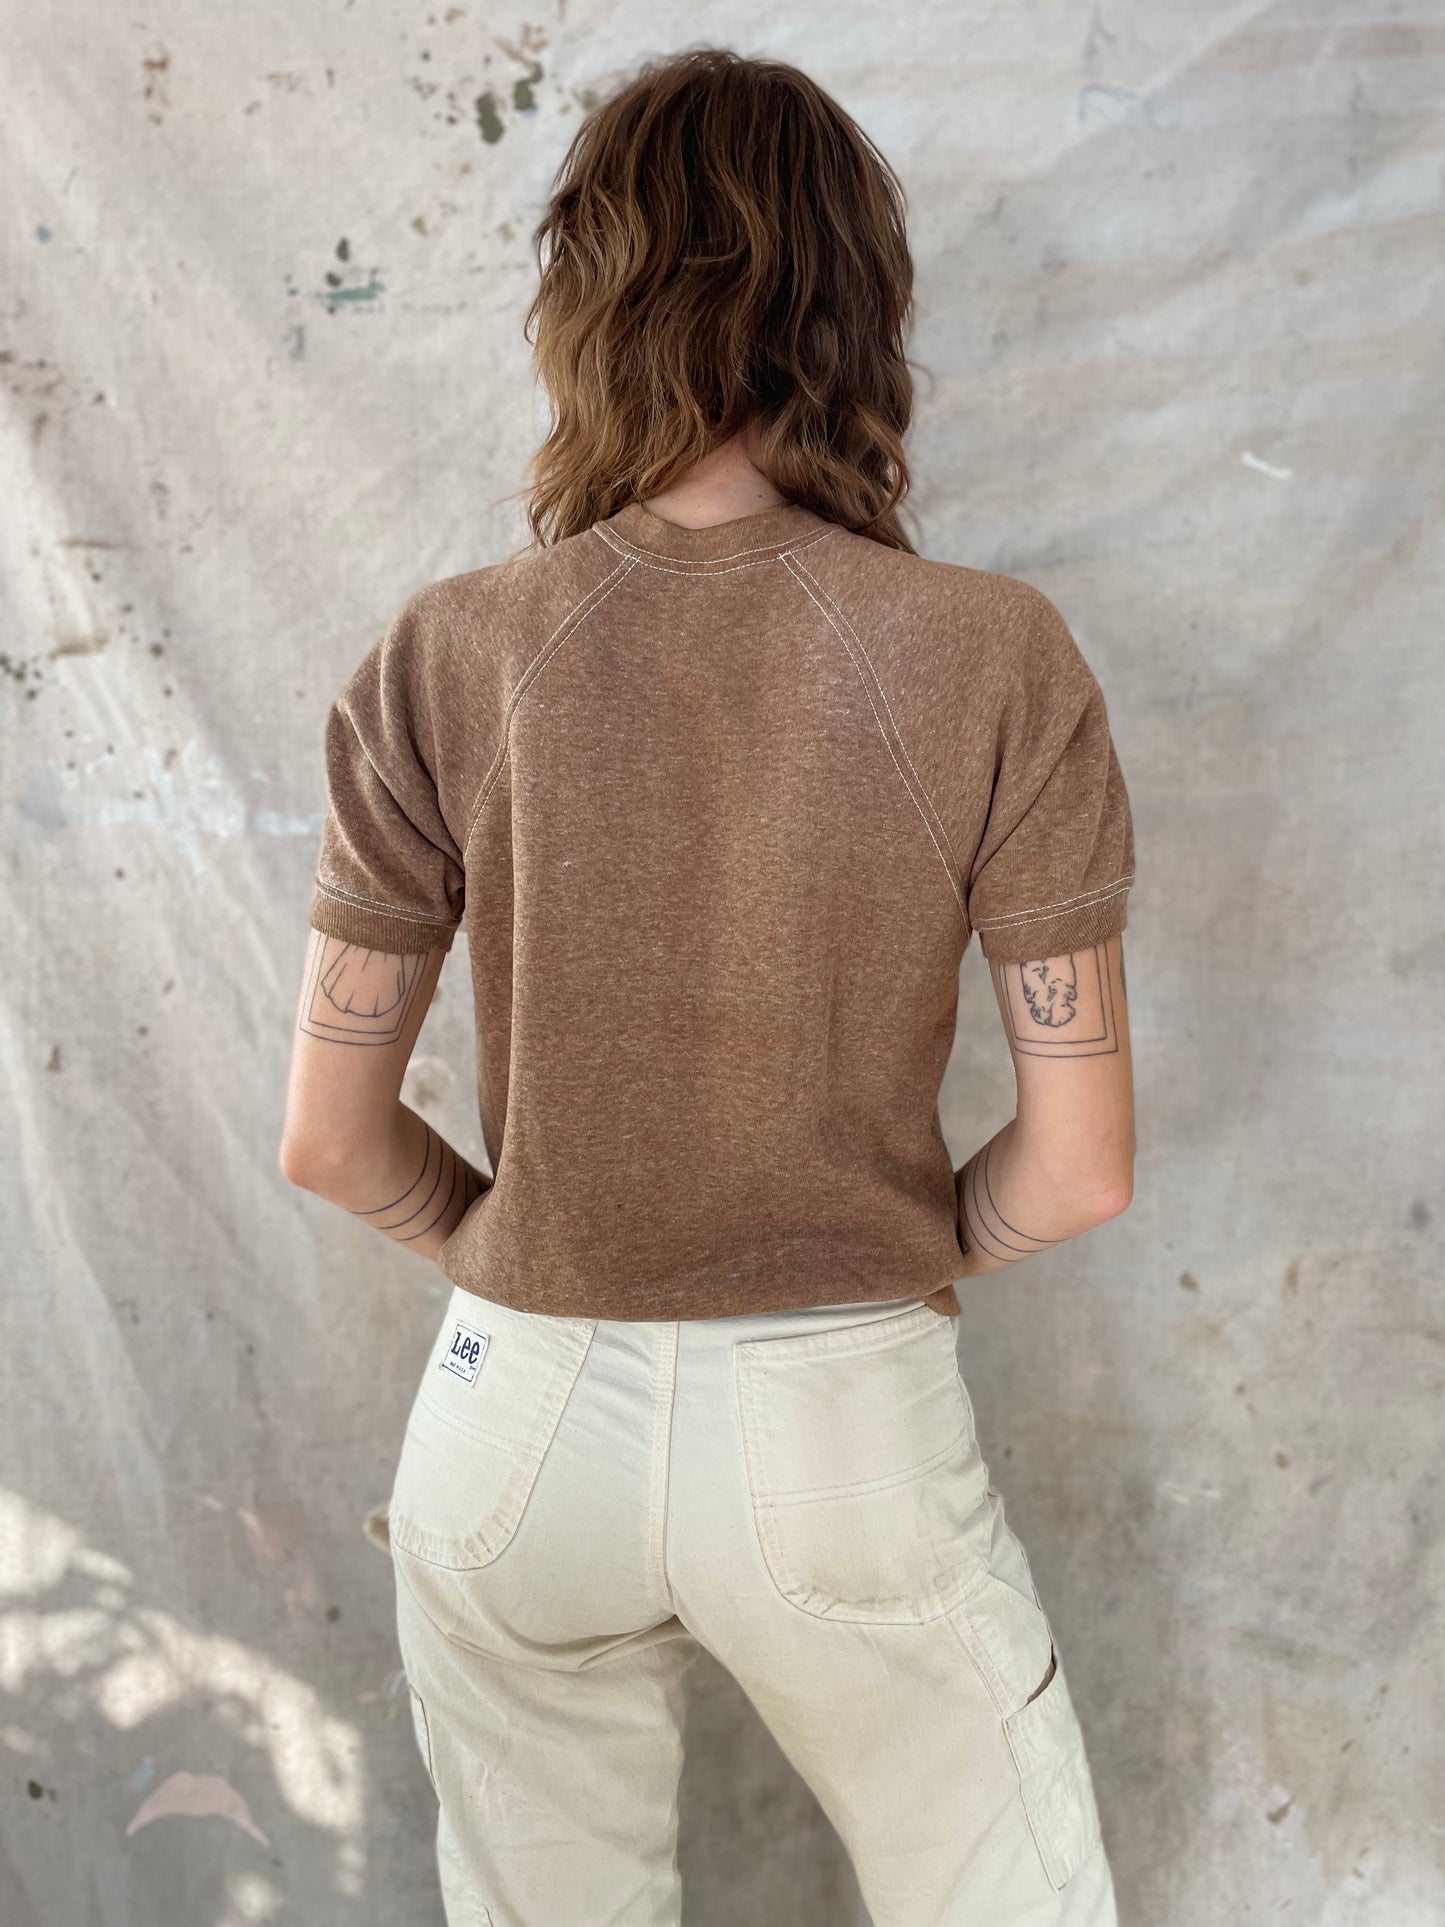 70s Blank Brown Short Sleeve Sweatshirt